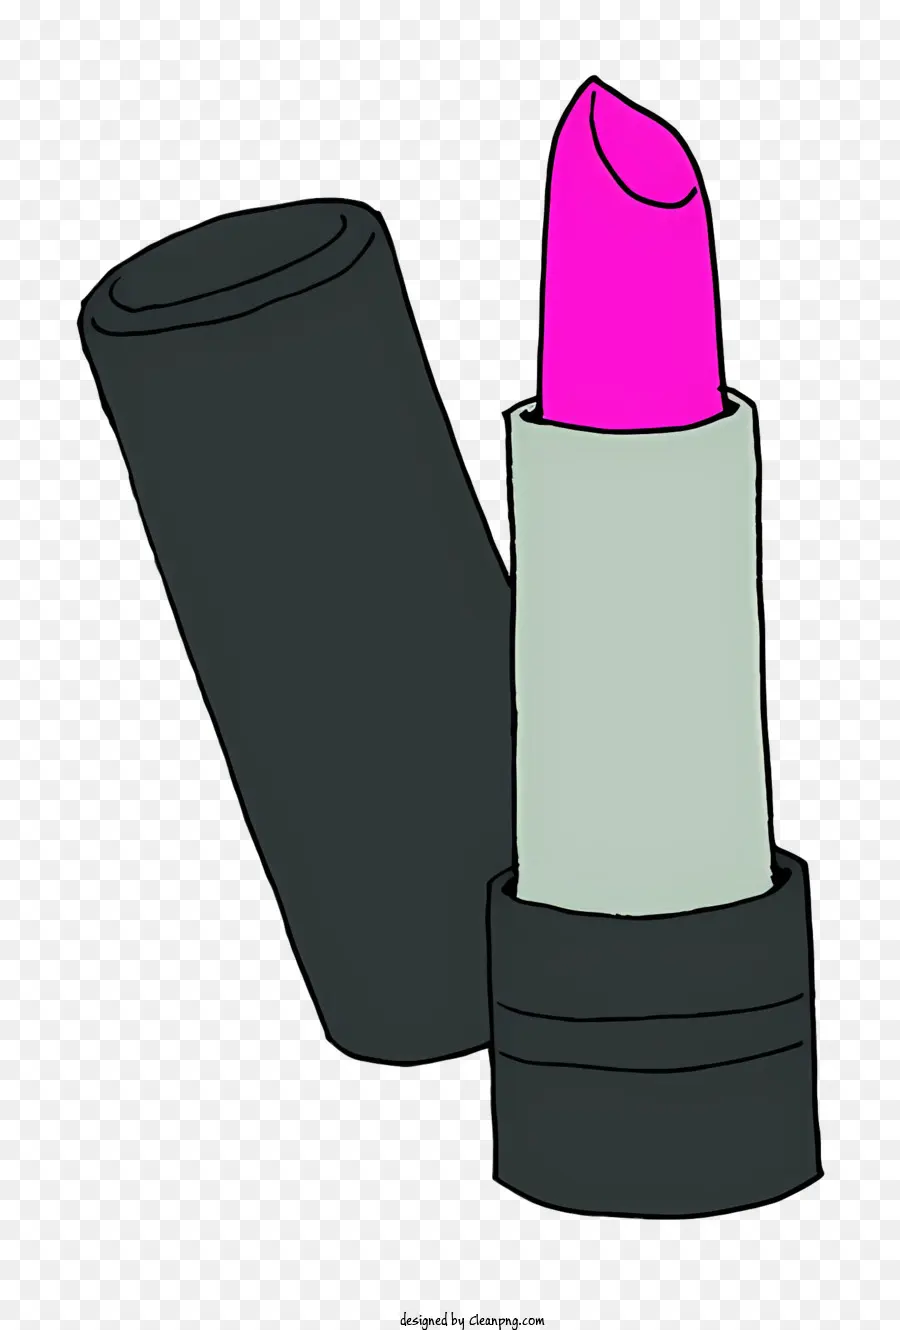 Biểu tượng màu hồng son môi màu đen trang điểm - Son môi màu hồng trên bề mặt đen, bản vẽ đơn giản